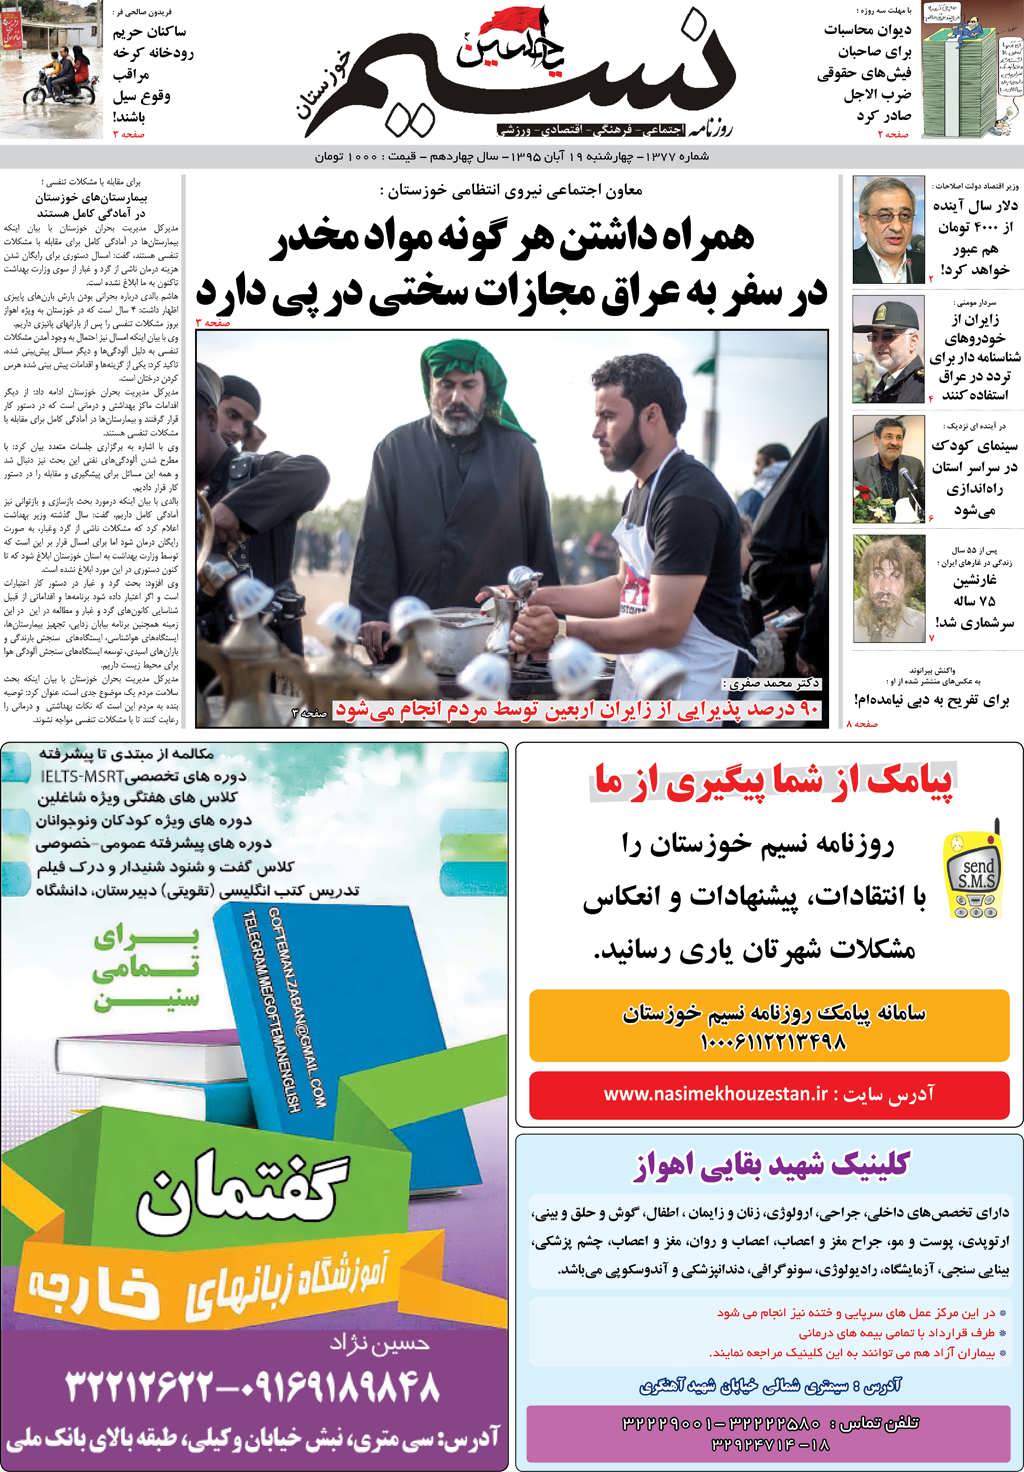 صفحه اصلی روزنامه نسیم شماره 1377